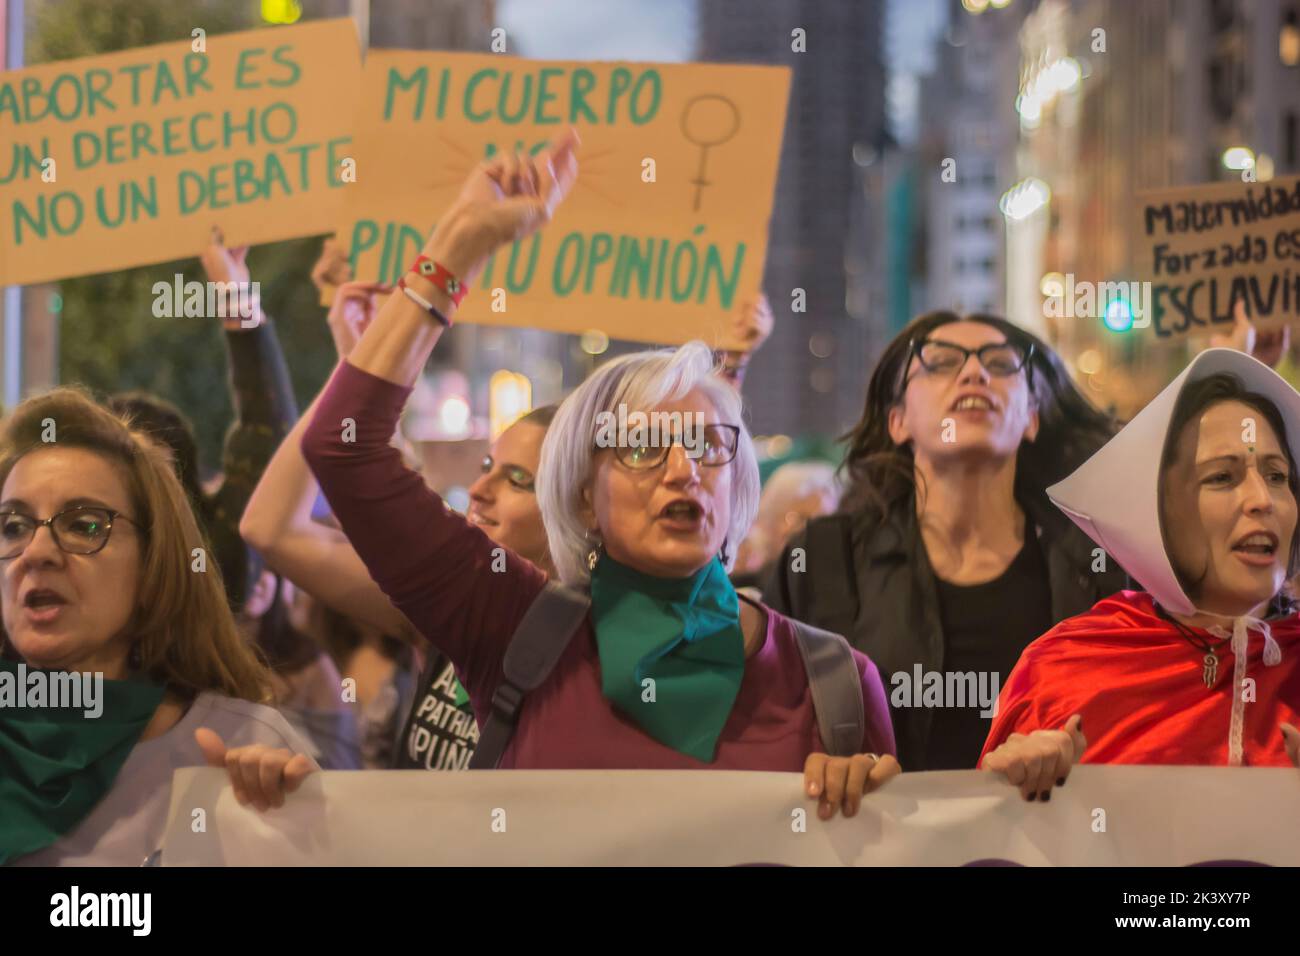 Miembros del movimiento feminista de Madrid protestan a favor del aborto libre con motivo del Día Mundial de Acción por el Aborto Legal, Seguro y Accesible. La manifestación internacional en Madrid ha tenido de la Glorieta de San Bernardo al Ministerio de Justicia. El 28 de septiembre se convirtió en 1990 en el Día Mundial de Acción por la Despenalización del Aborto. Esta propuesta es una de las conclusiones de la Reunión de Feministas Latinoamericanas celebrada en Buenos Aires, con el objetivo de asegurar que el aborto sea regulado como un derecho a frenar la mortalidad materna, los riesgos para la salud de las mujeres asociados Foto de stock